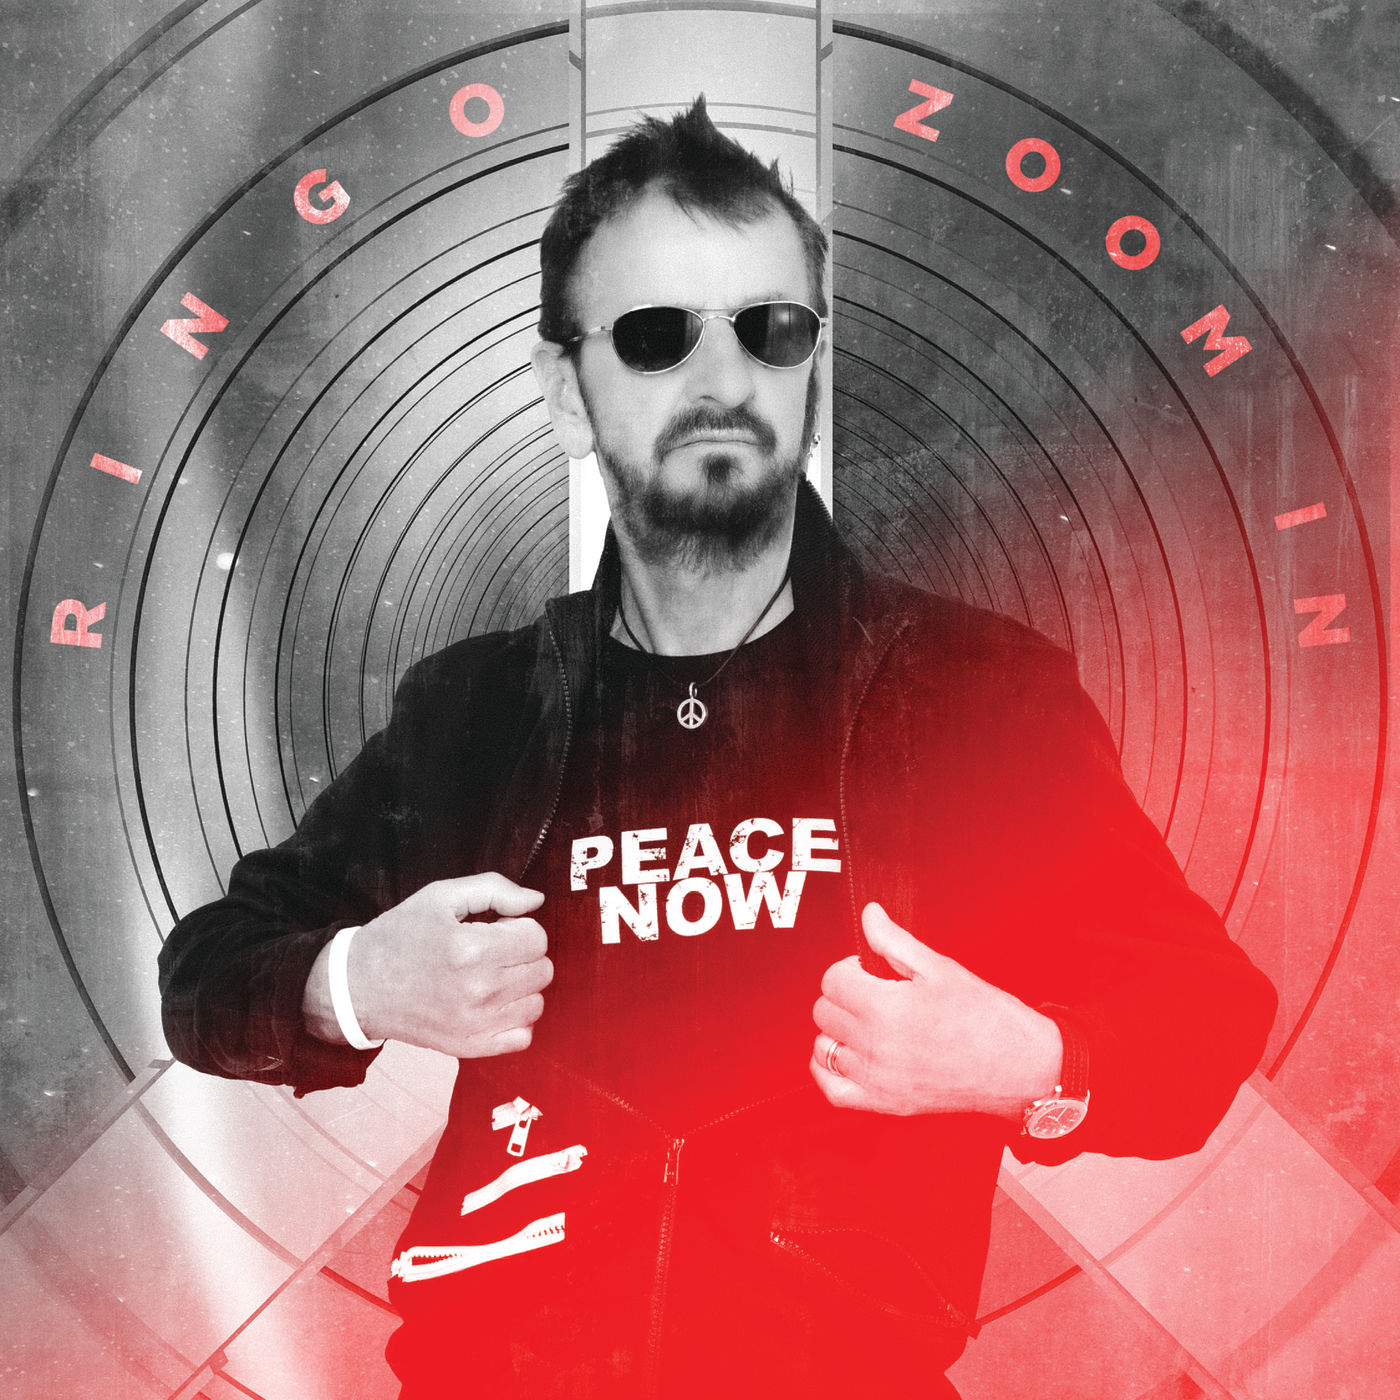 Ringo Starr - 2021 - Zoom In [2021 HDtracks] 24-48